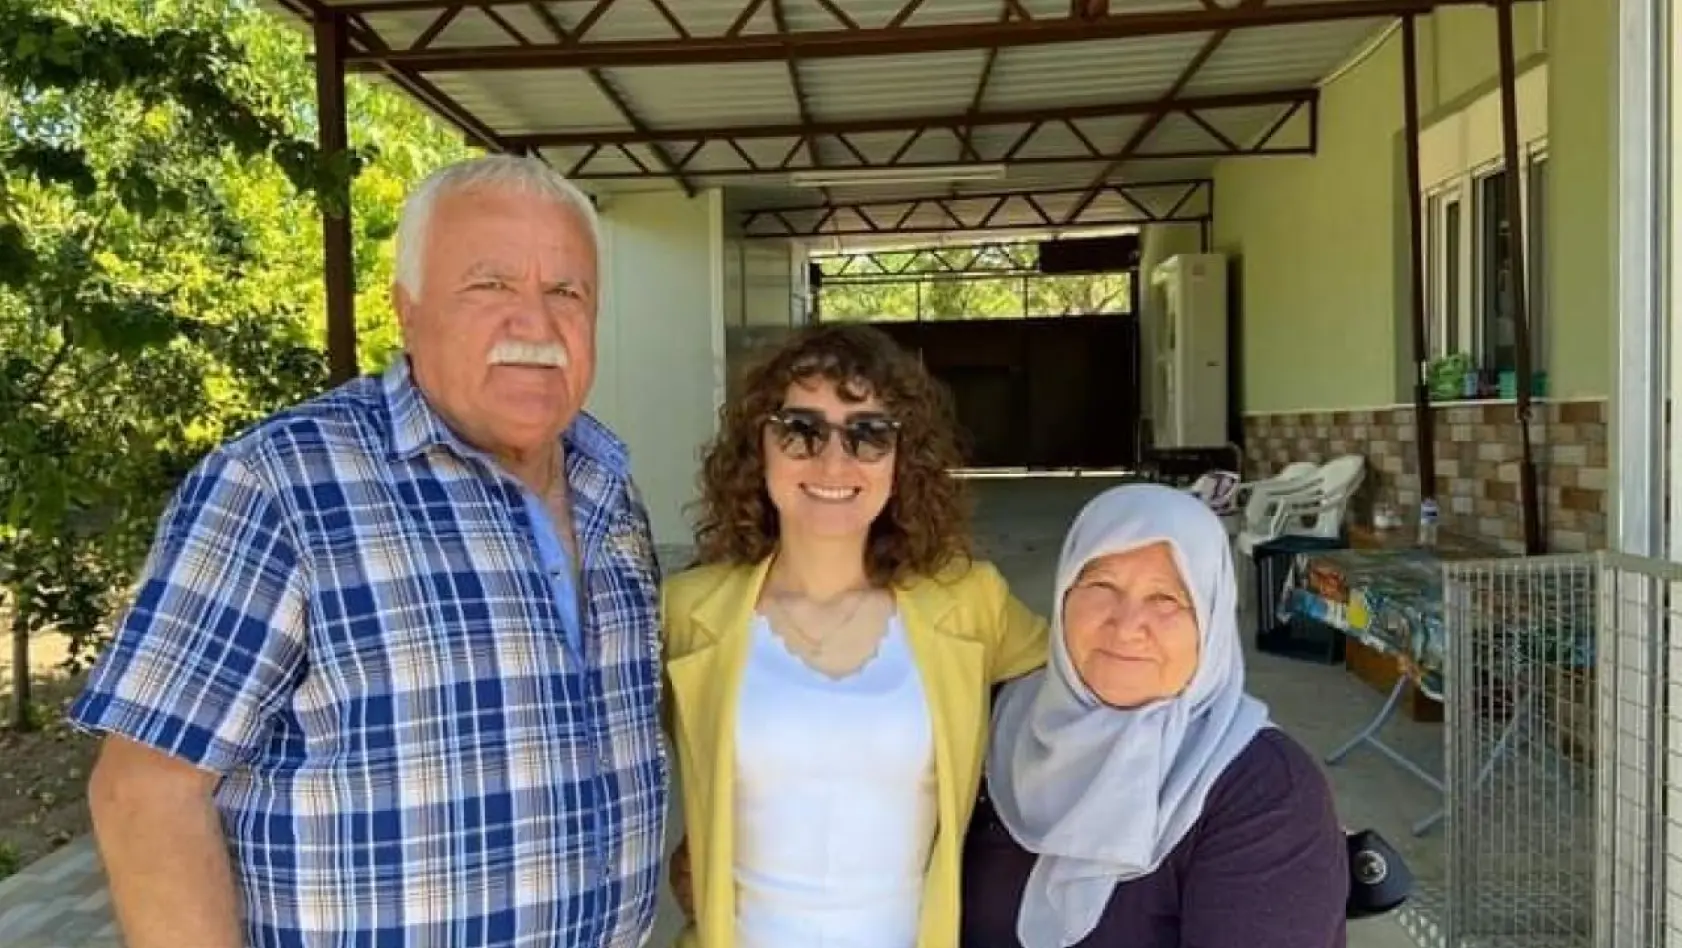 Bekilli Kaymakamı Şenoğlu, Kıbrıs Gazileriyle bir araya geldi